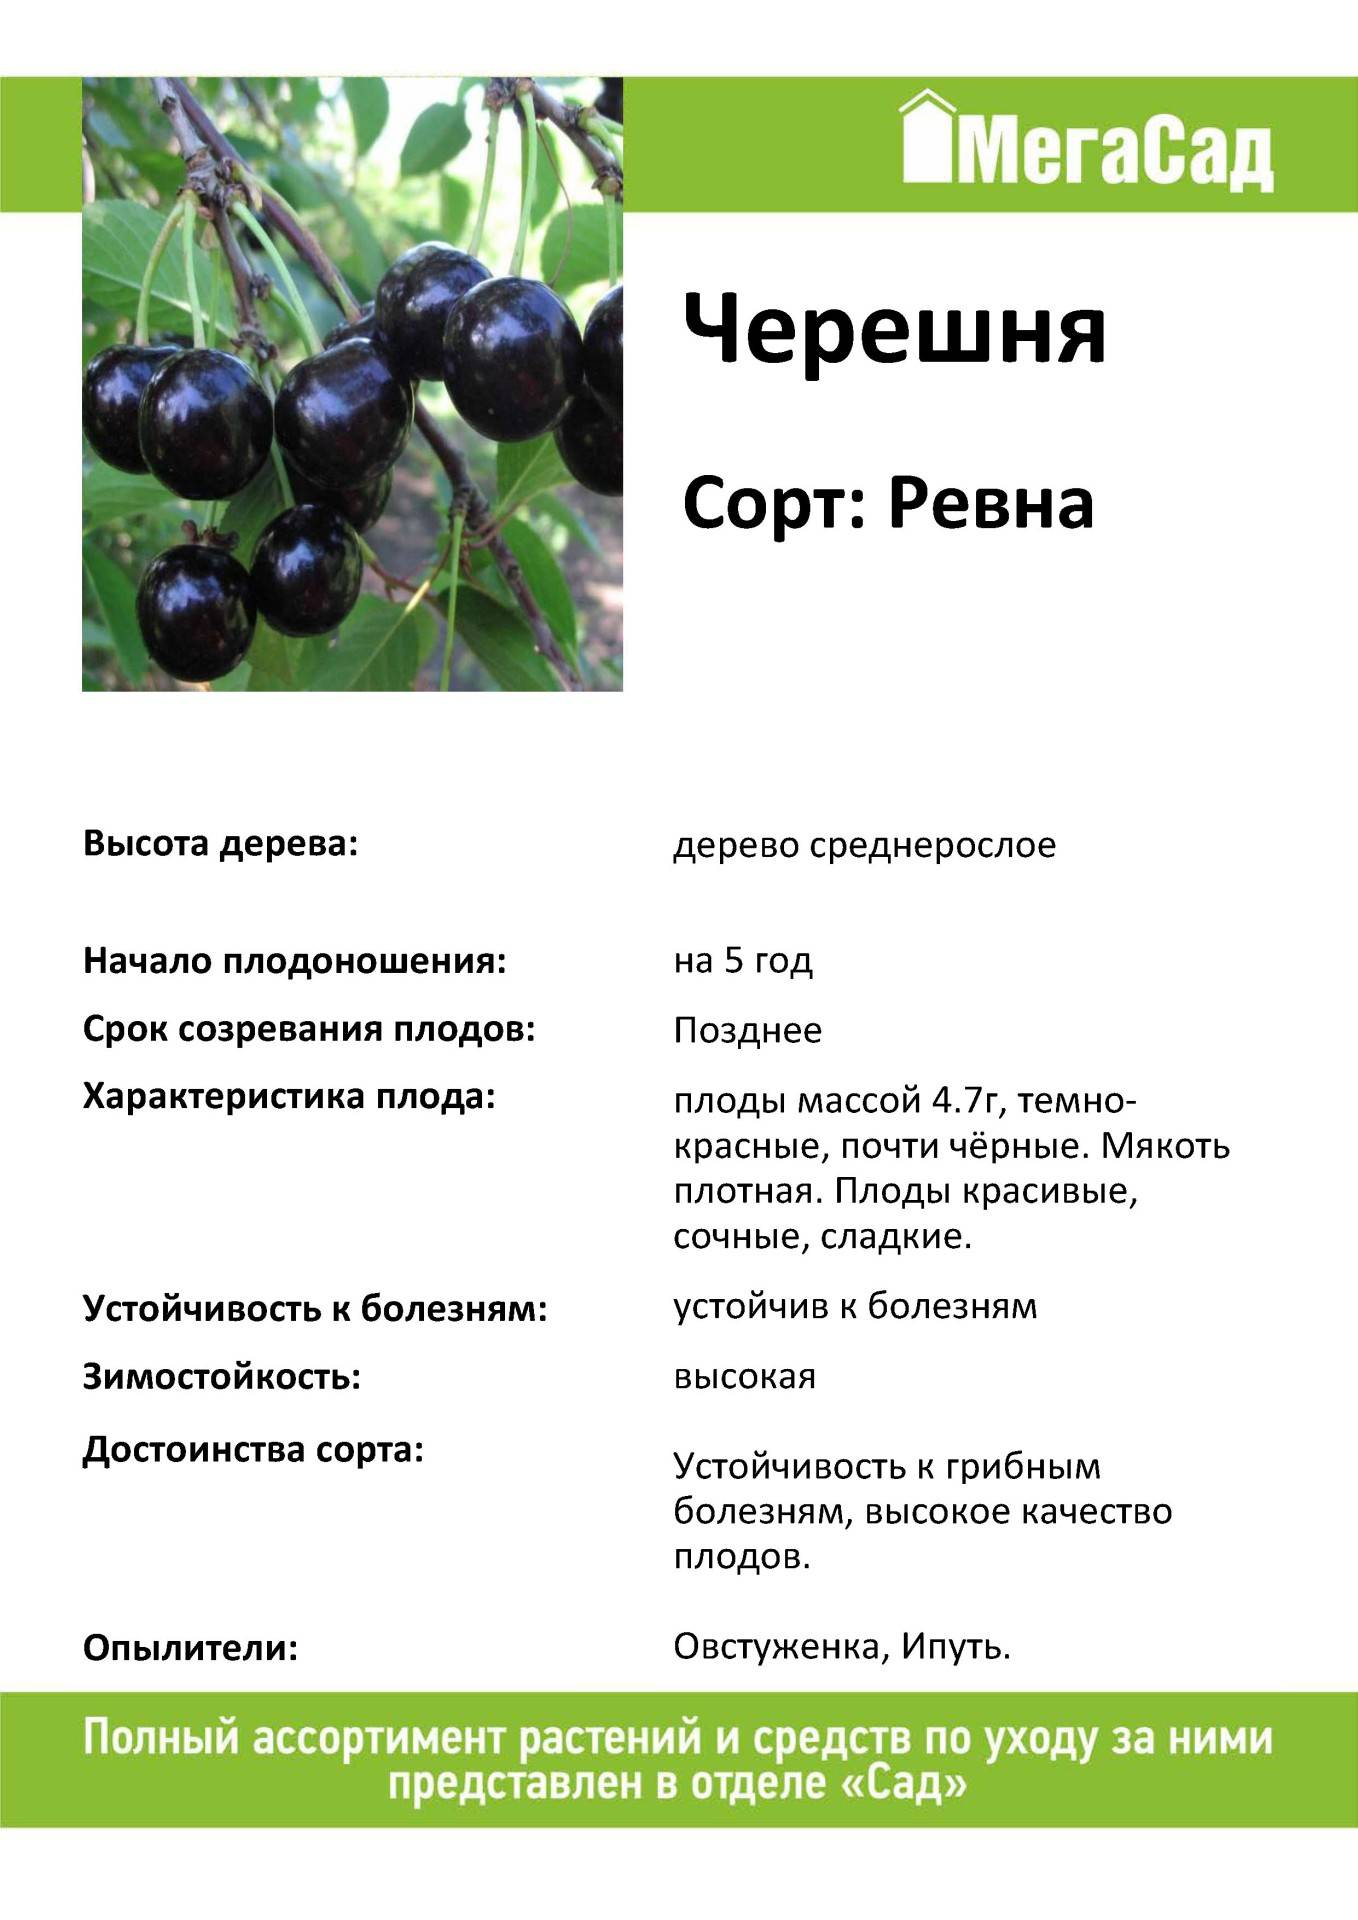 Черешня крупноплодная - описание сорта, фото, отзывы, характеристики ягоды, как посадить и ухаживать